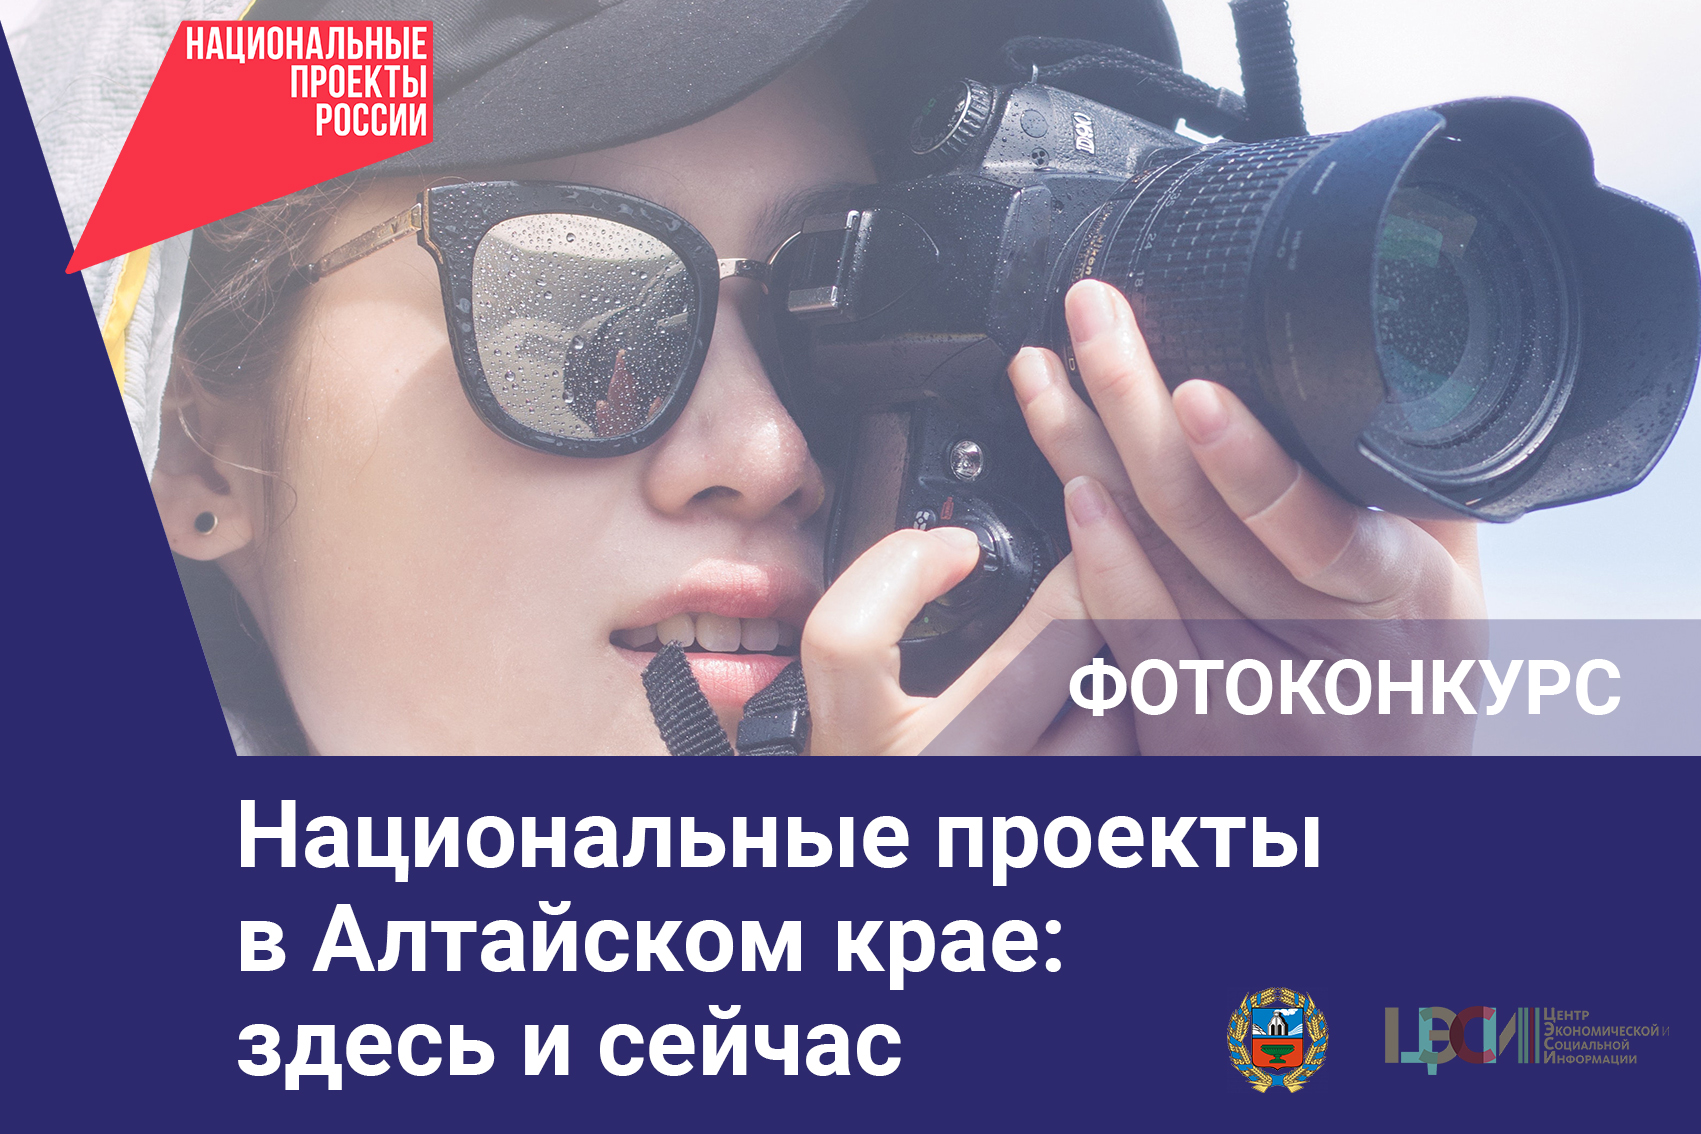 В регионе объявлен краевой фотоконкурс «Национальные проекты в Алтайском крае: здесь и сейчас».